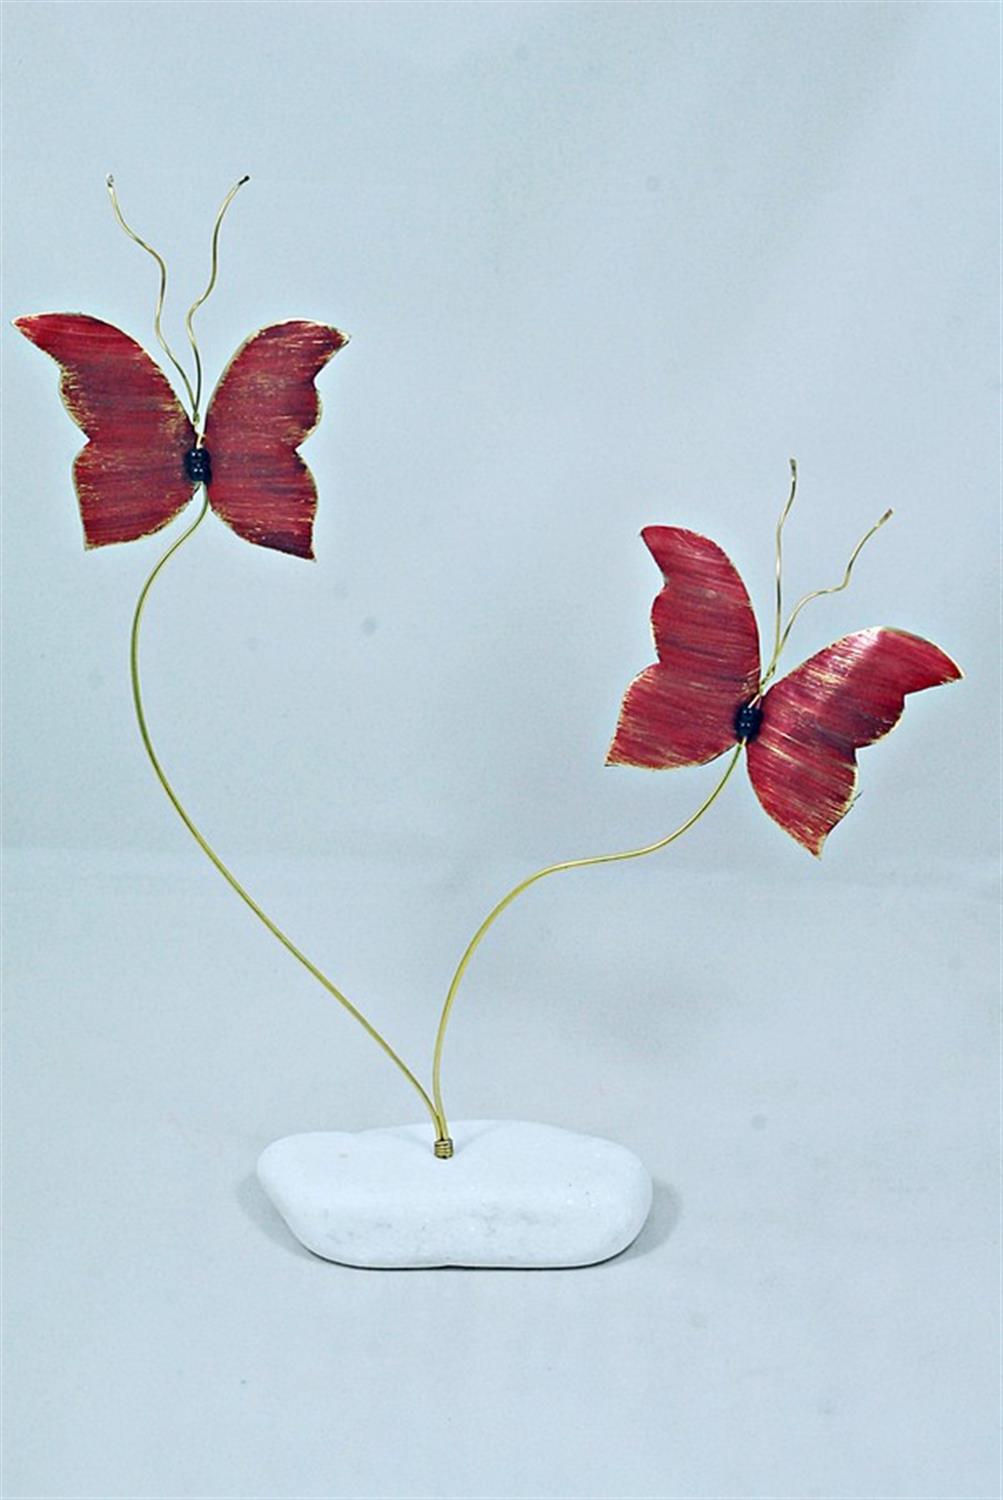 Χειροποίητο διακοσμητικό επιτραπέζιο Πεταλούδα διπλή ορειχάλκινο κόκκινο 21x25cm